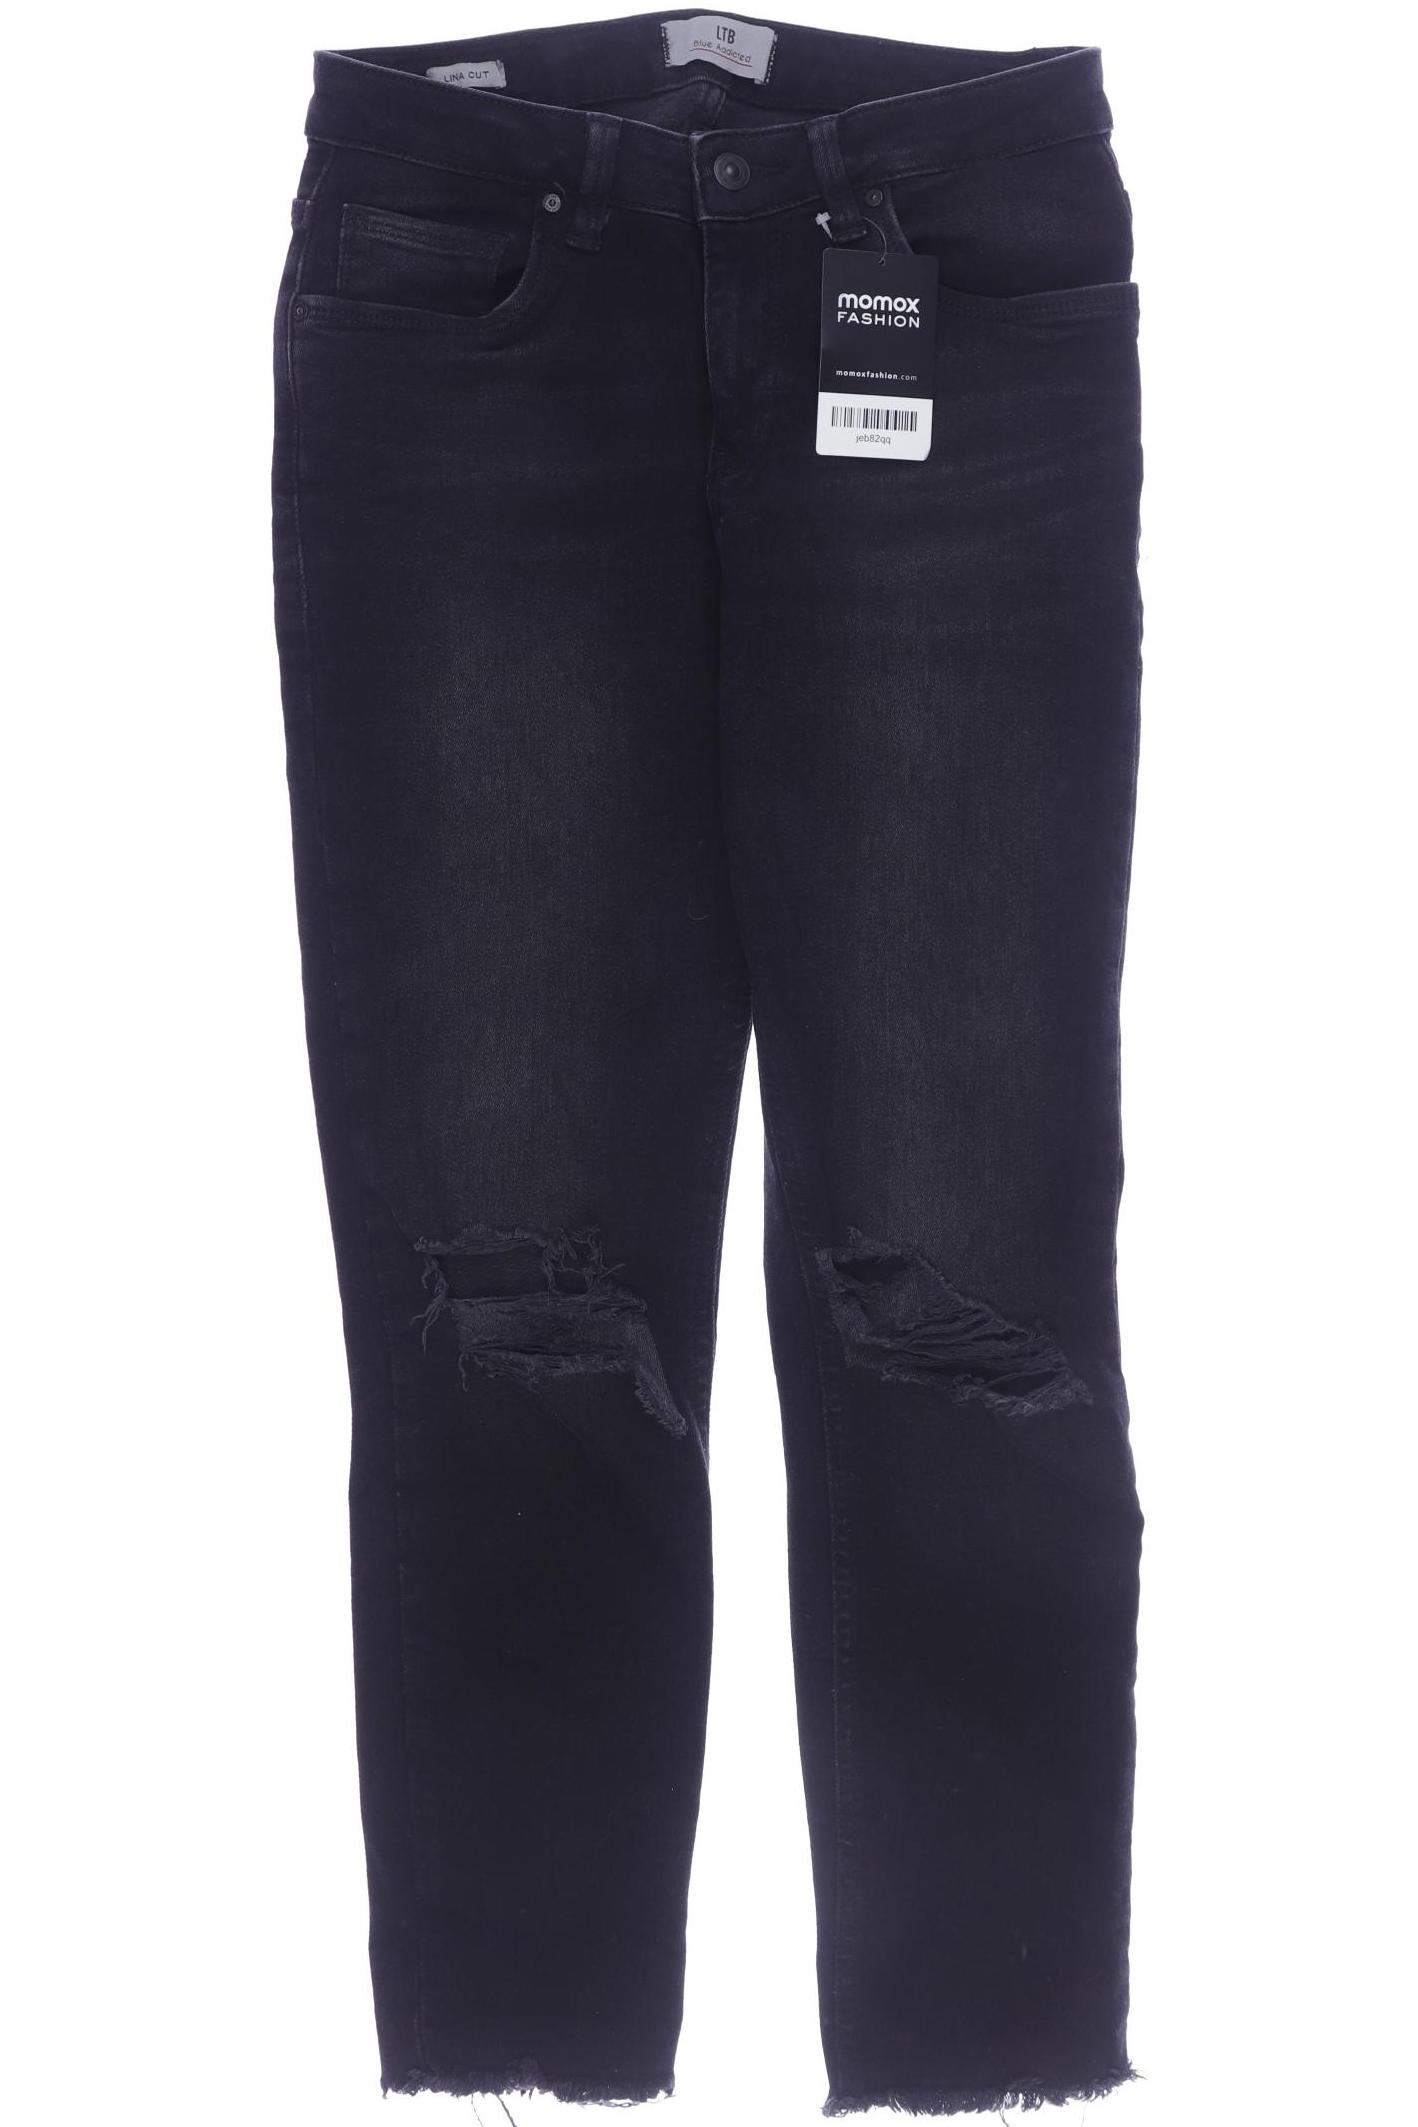 LTB Damen Jeans, schwarz von LTB